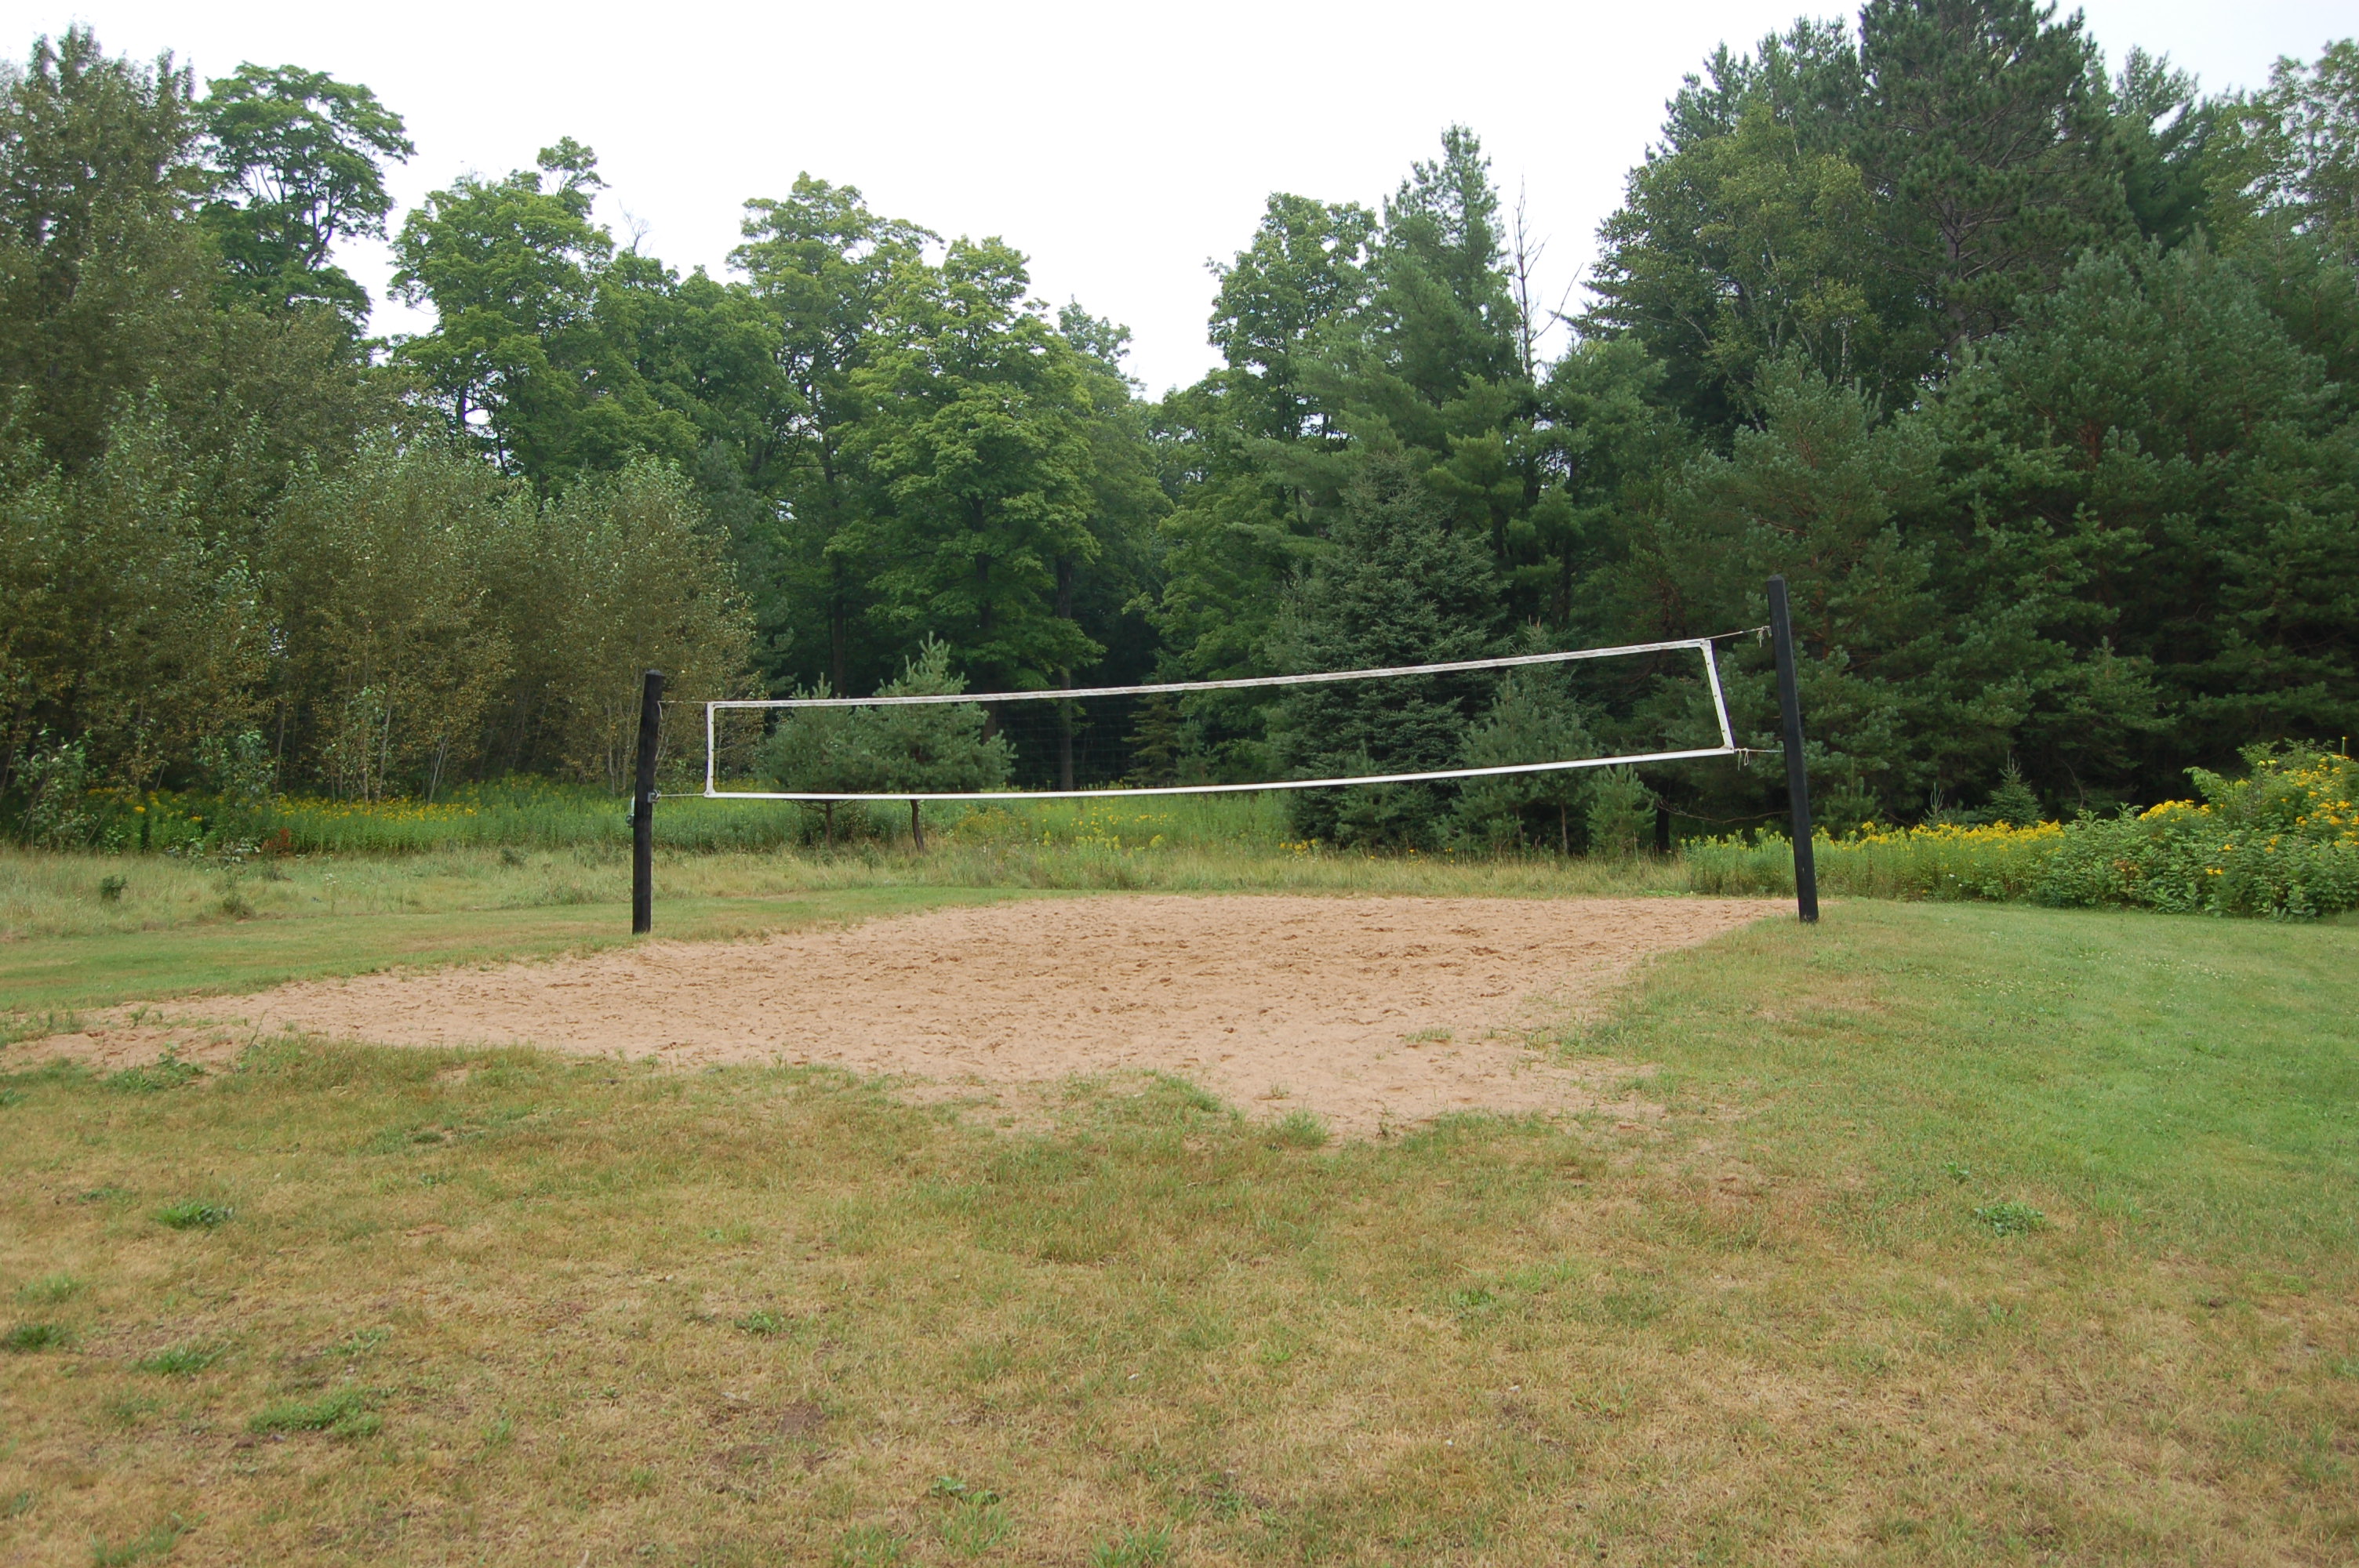 Bewabic State Park Volleyball Court